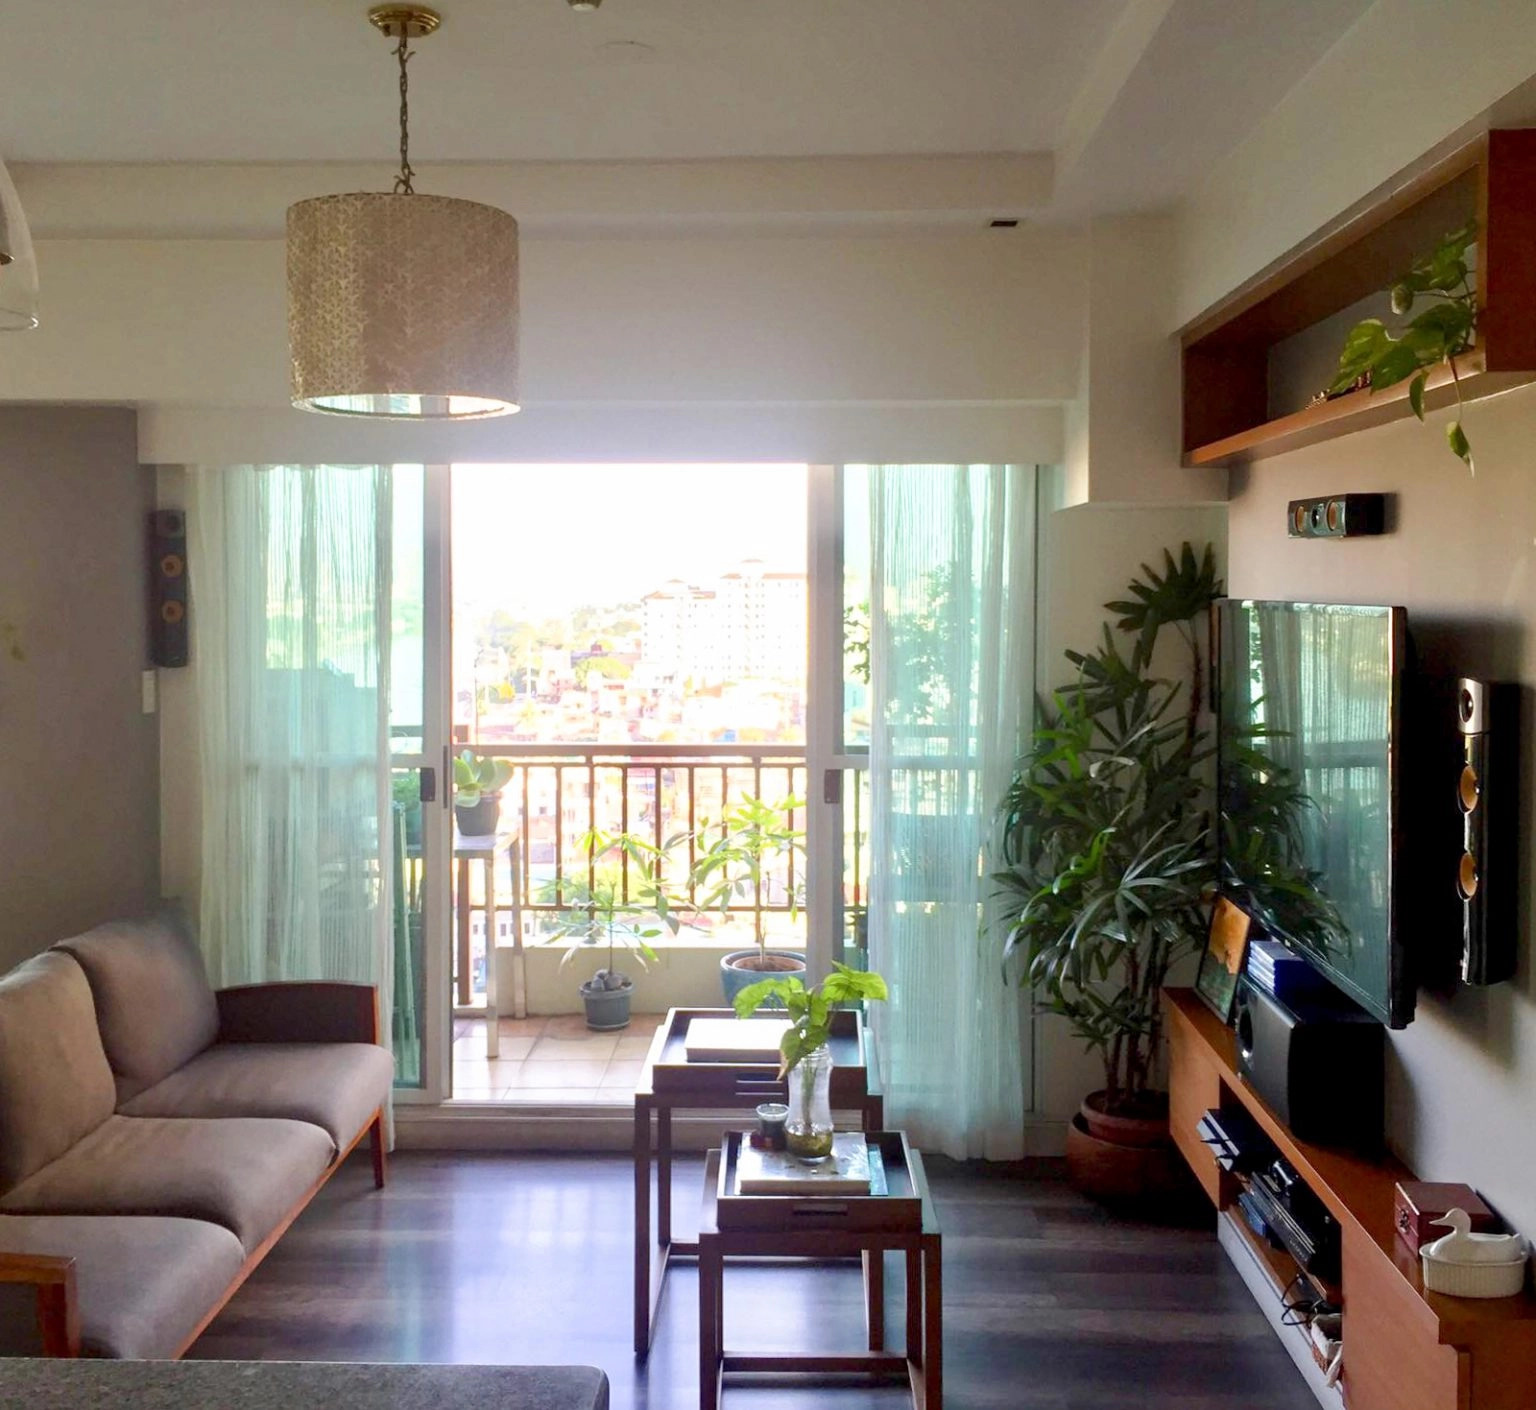 3BR Condominium for Sale in Tivoli Garden Residences, Mandaluyong